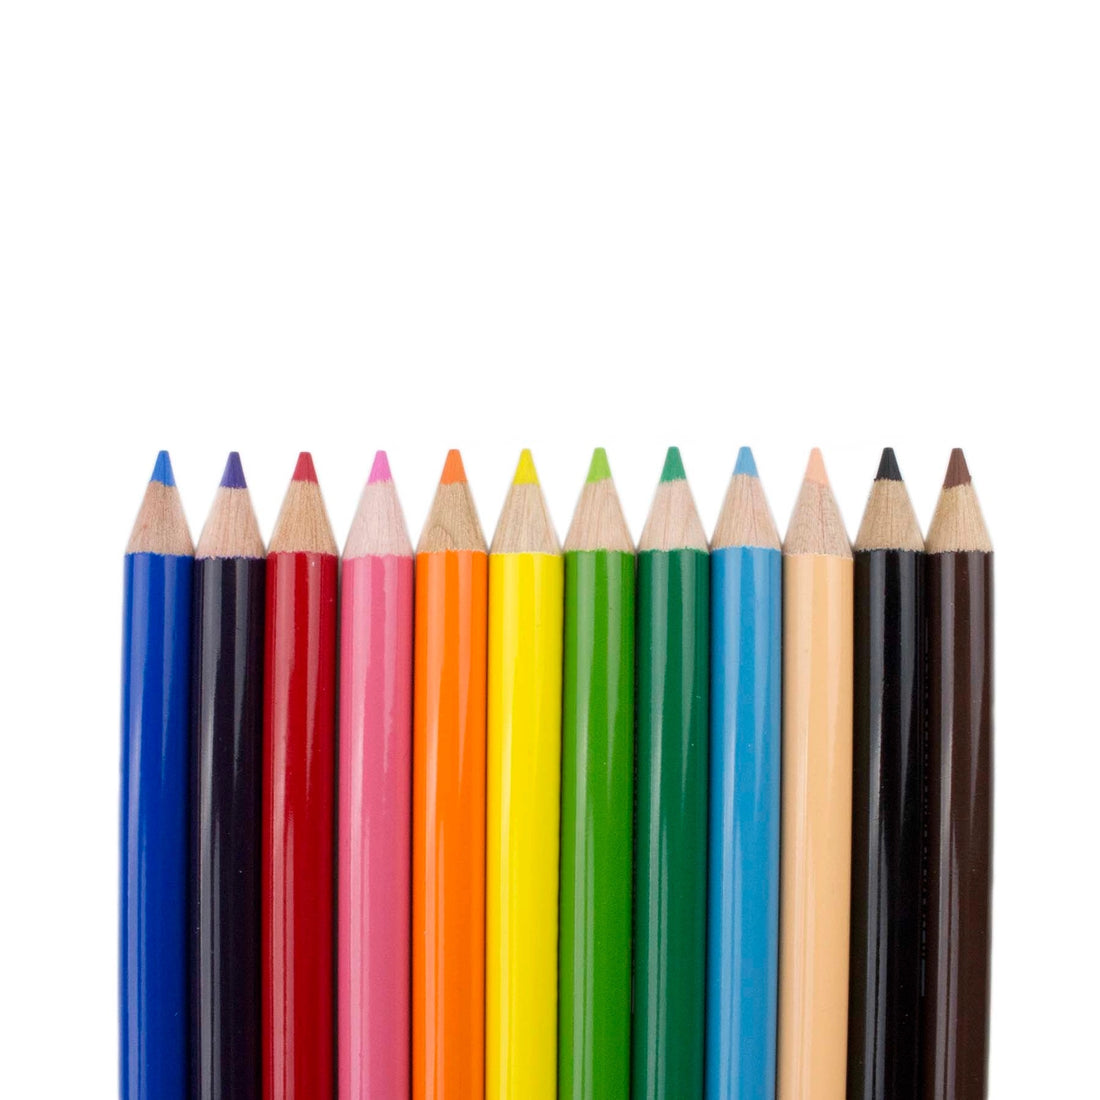 1500 Series Colored Pencils - 12PC Set - Parkette.